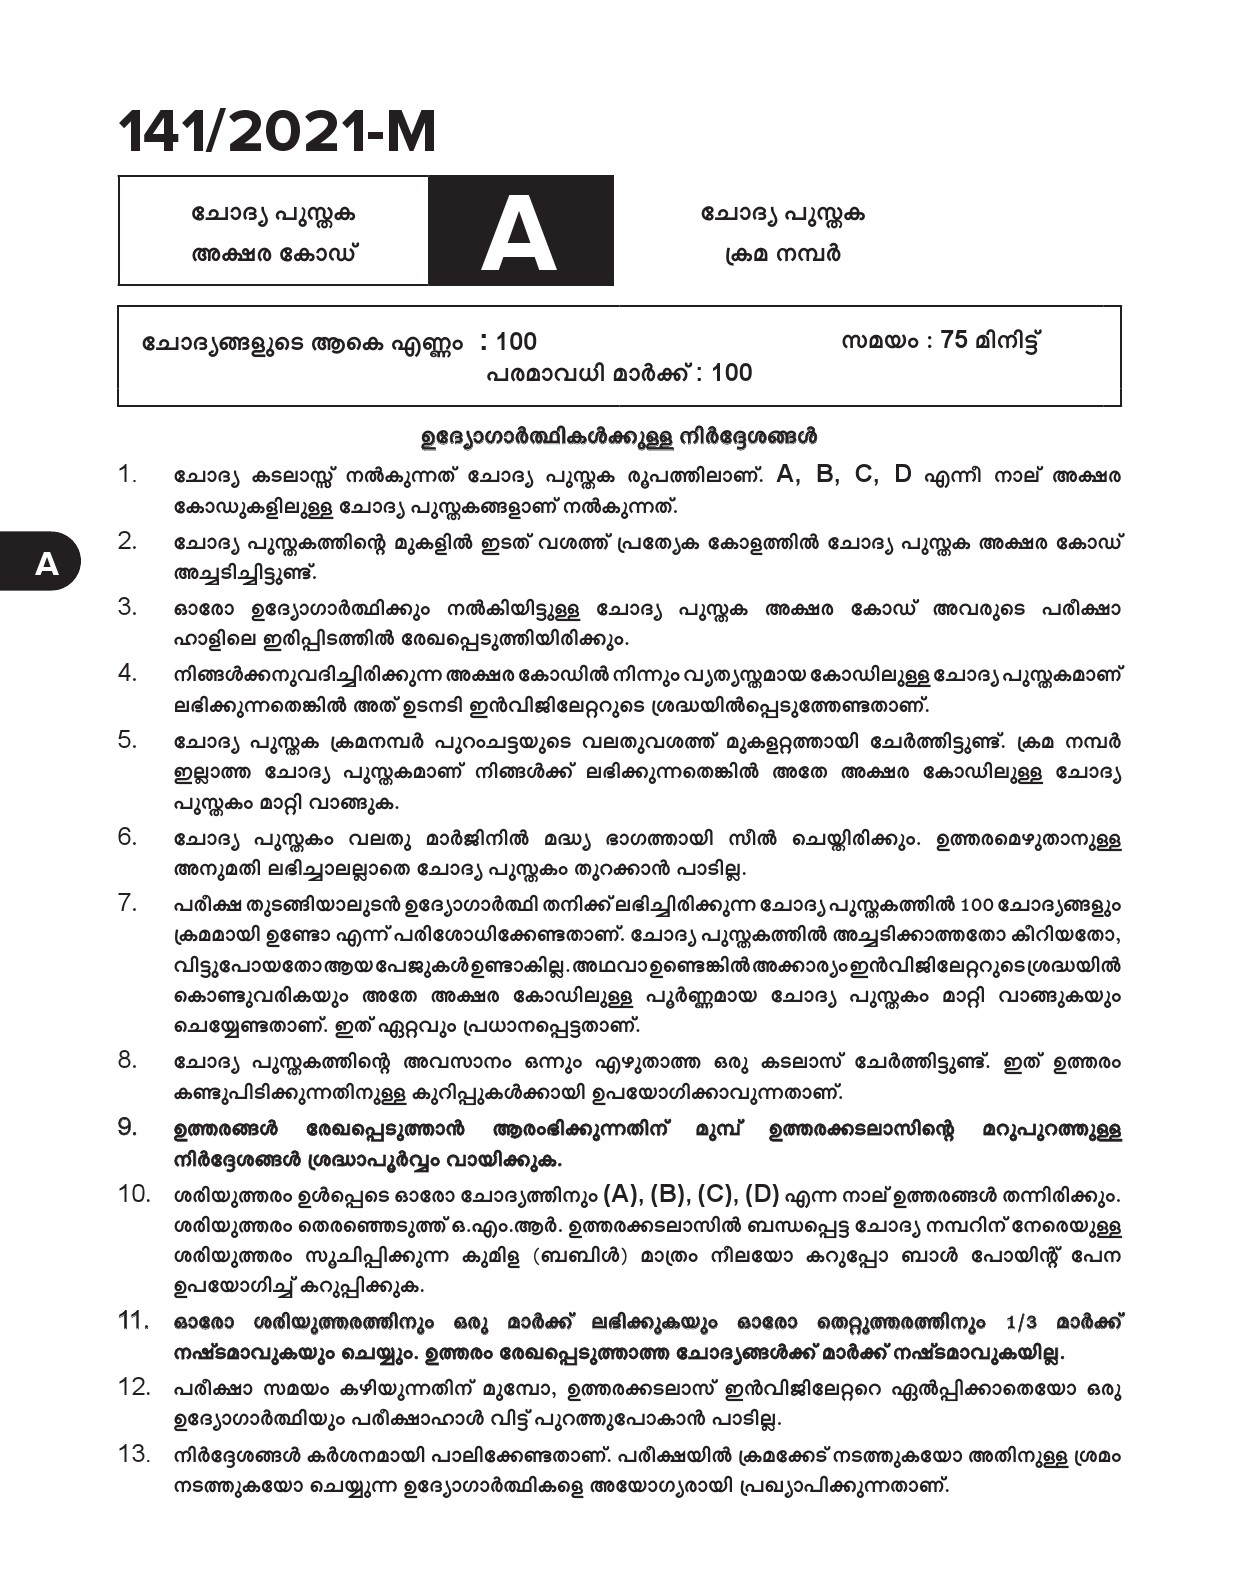 KPSC Typist Clerk Malayalam Exam 2021 Code 1412021 M 1